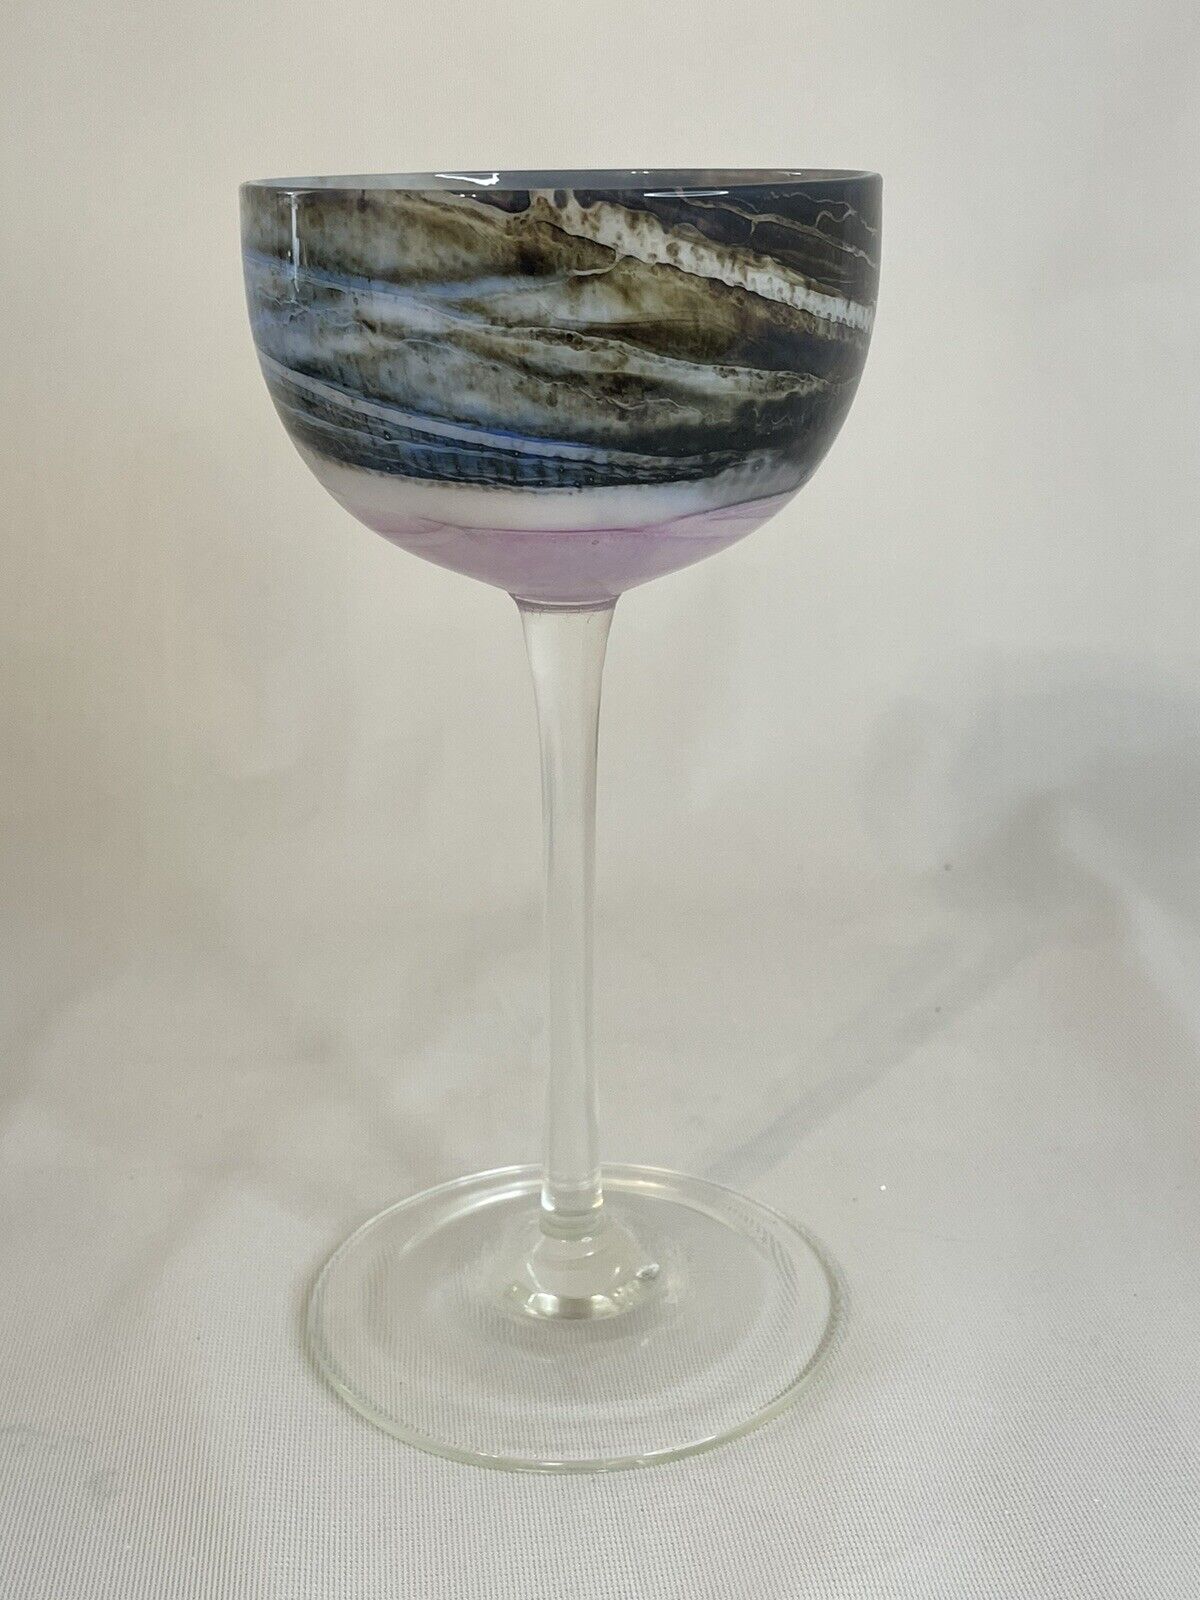 Rare Steven Maslach Volcano Hand Blown Wine Glass Artist Signed 1977 7.5” Tall